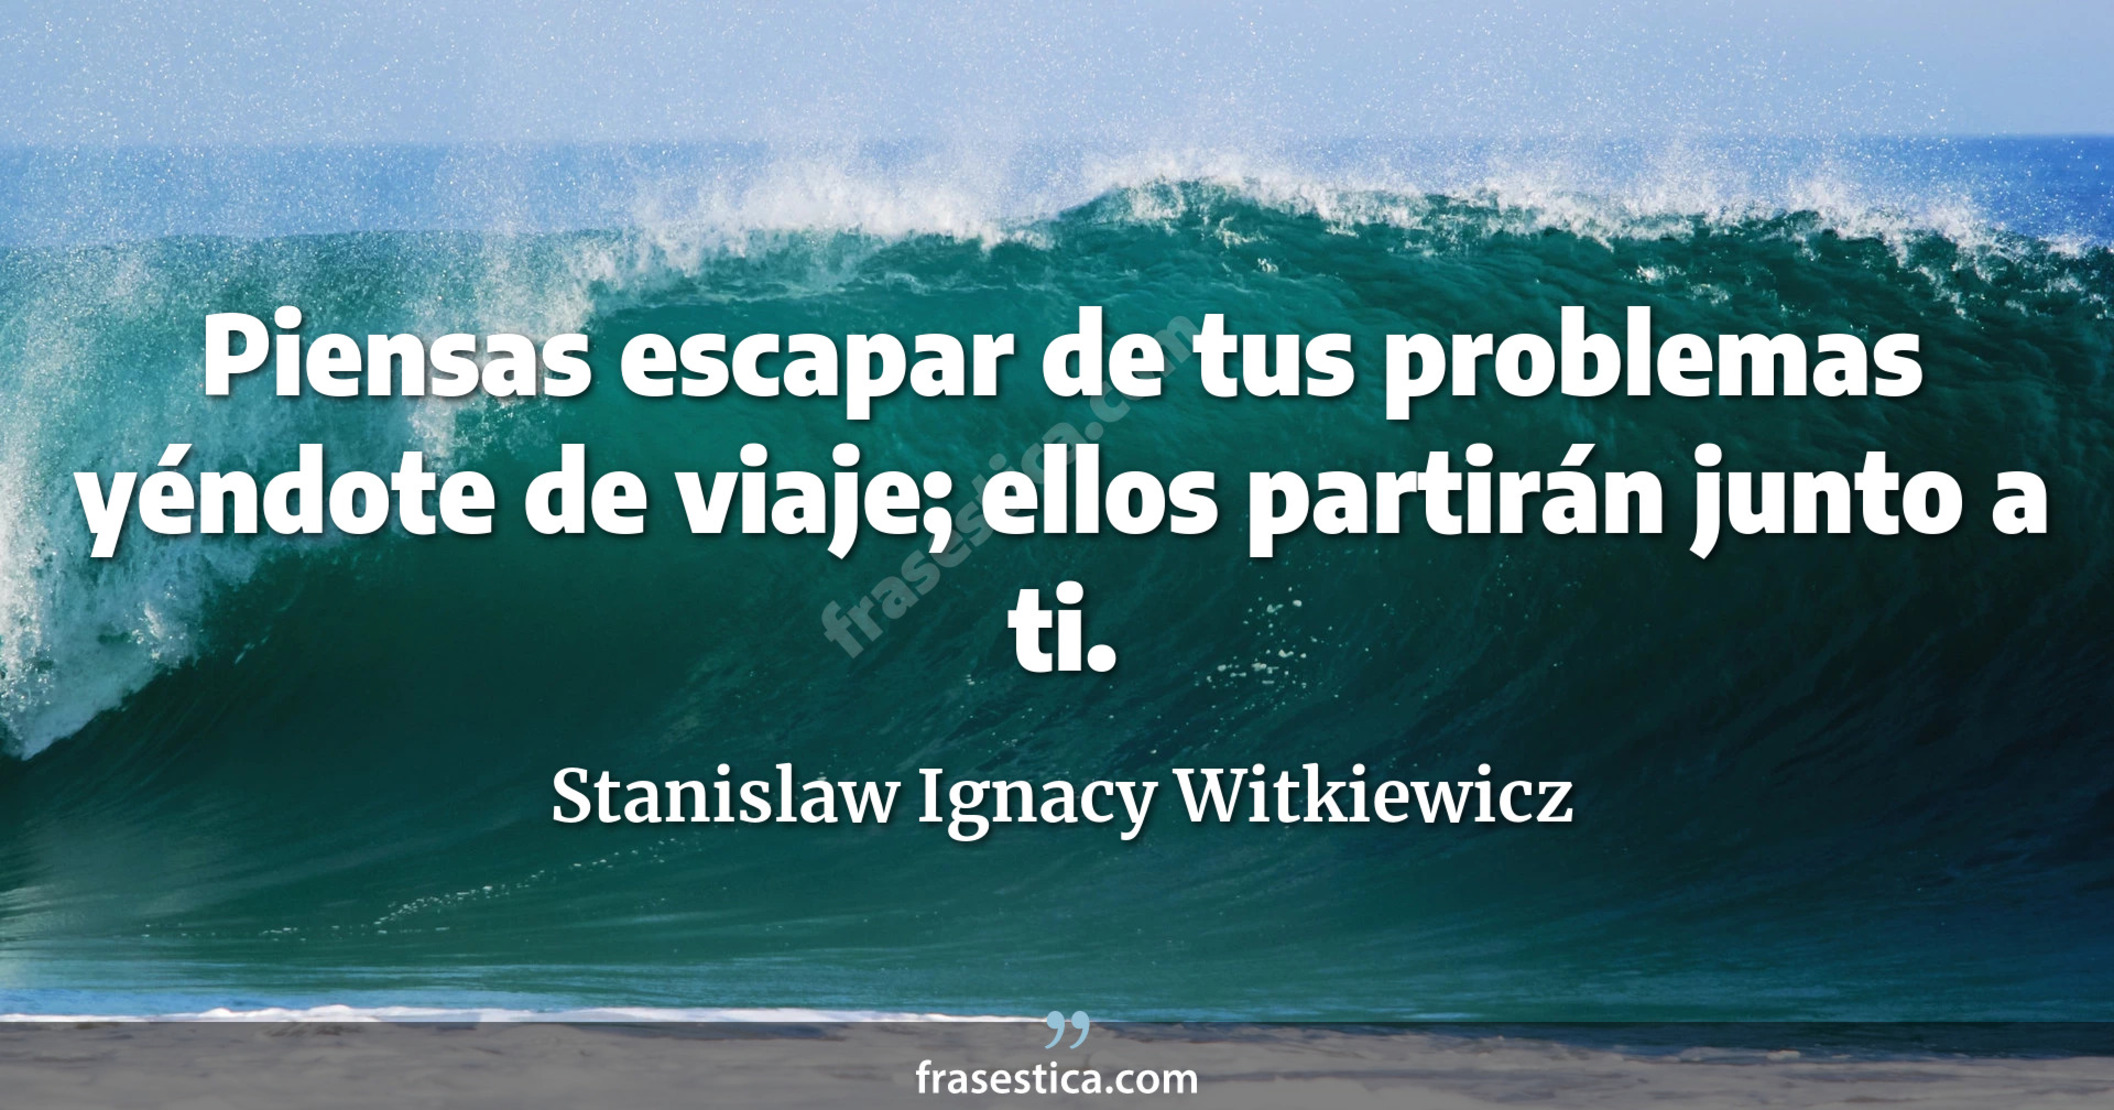 Piensas escapar de tus problemas yéndote de viaje; ellos partirán junto a ti. - Stanislaw Ignacy Witkiewicz